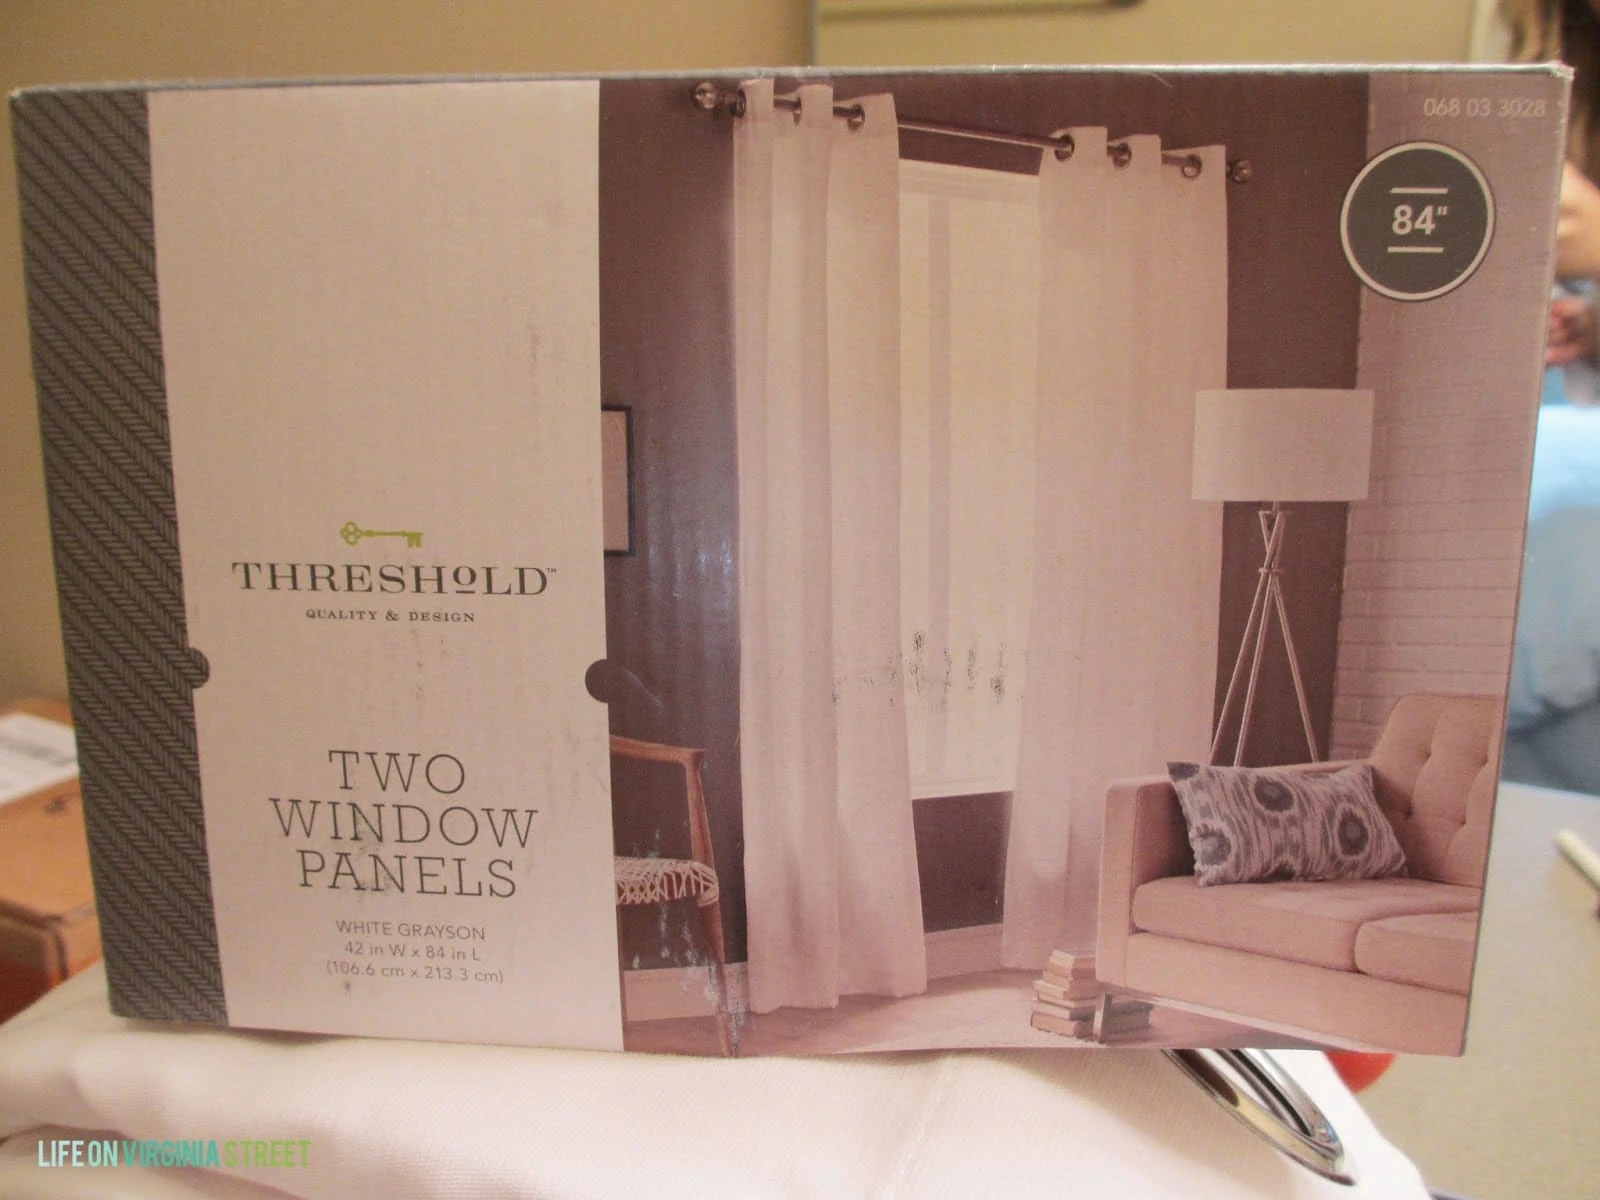 Plain white window panel curtain shown in a box.